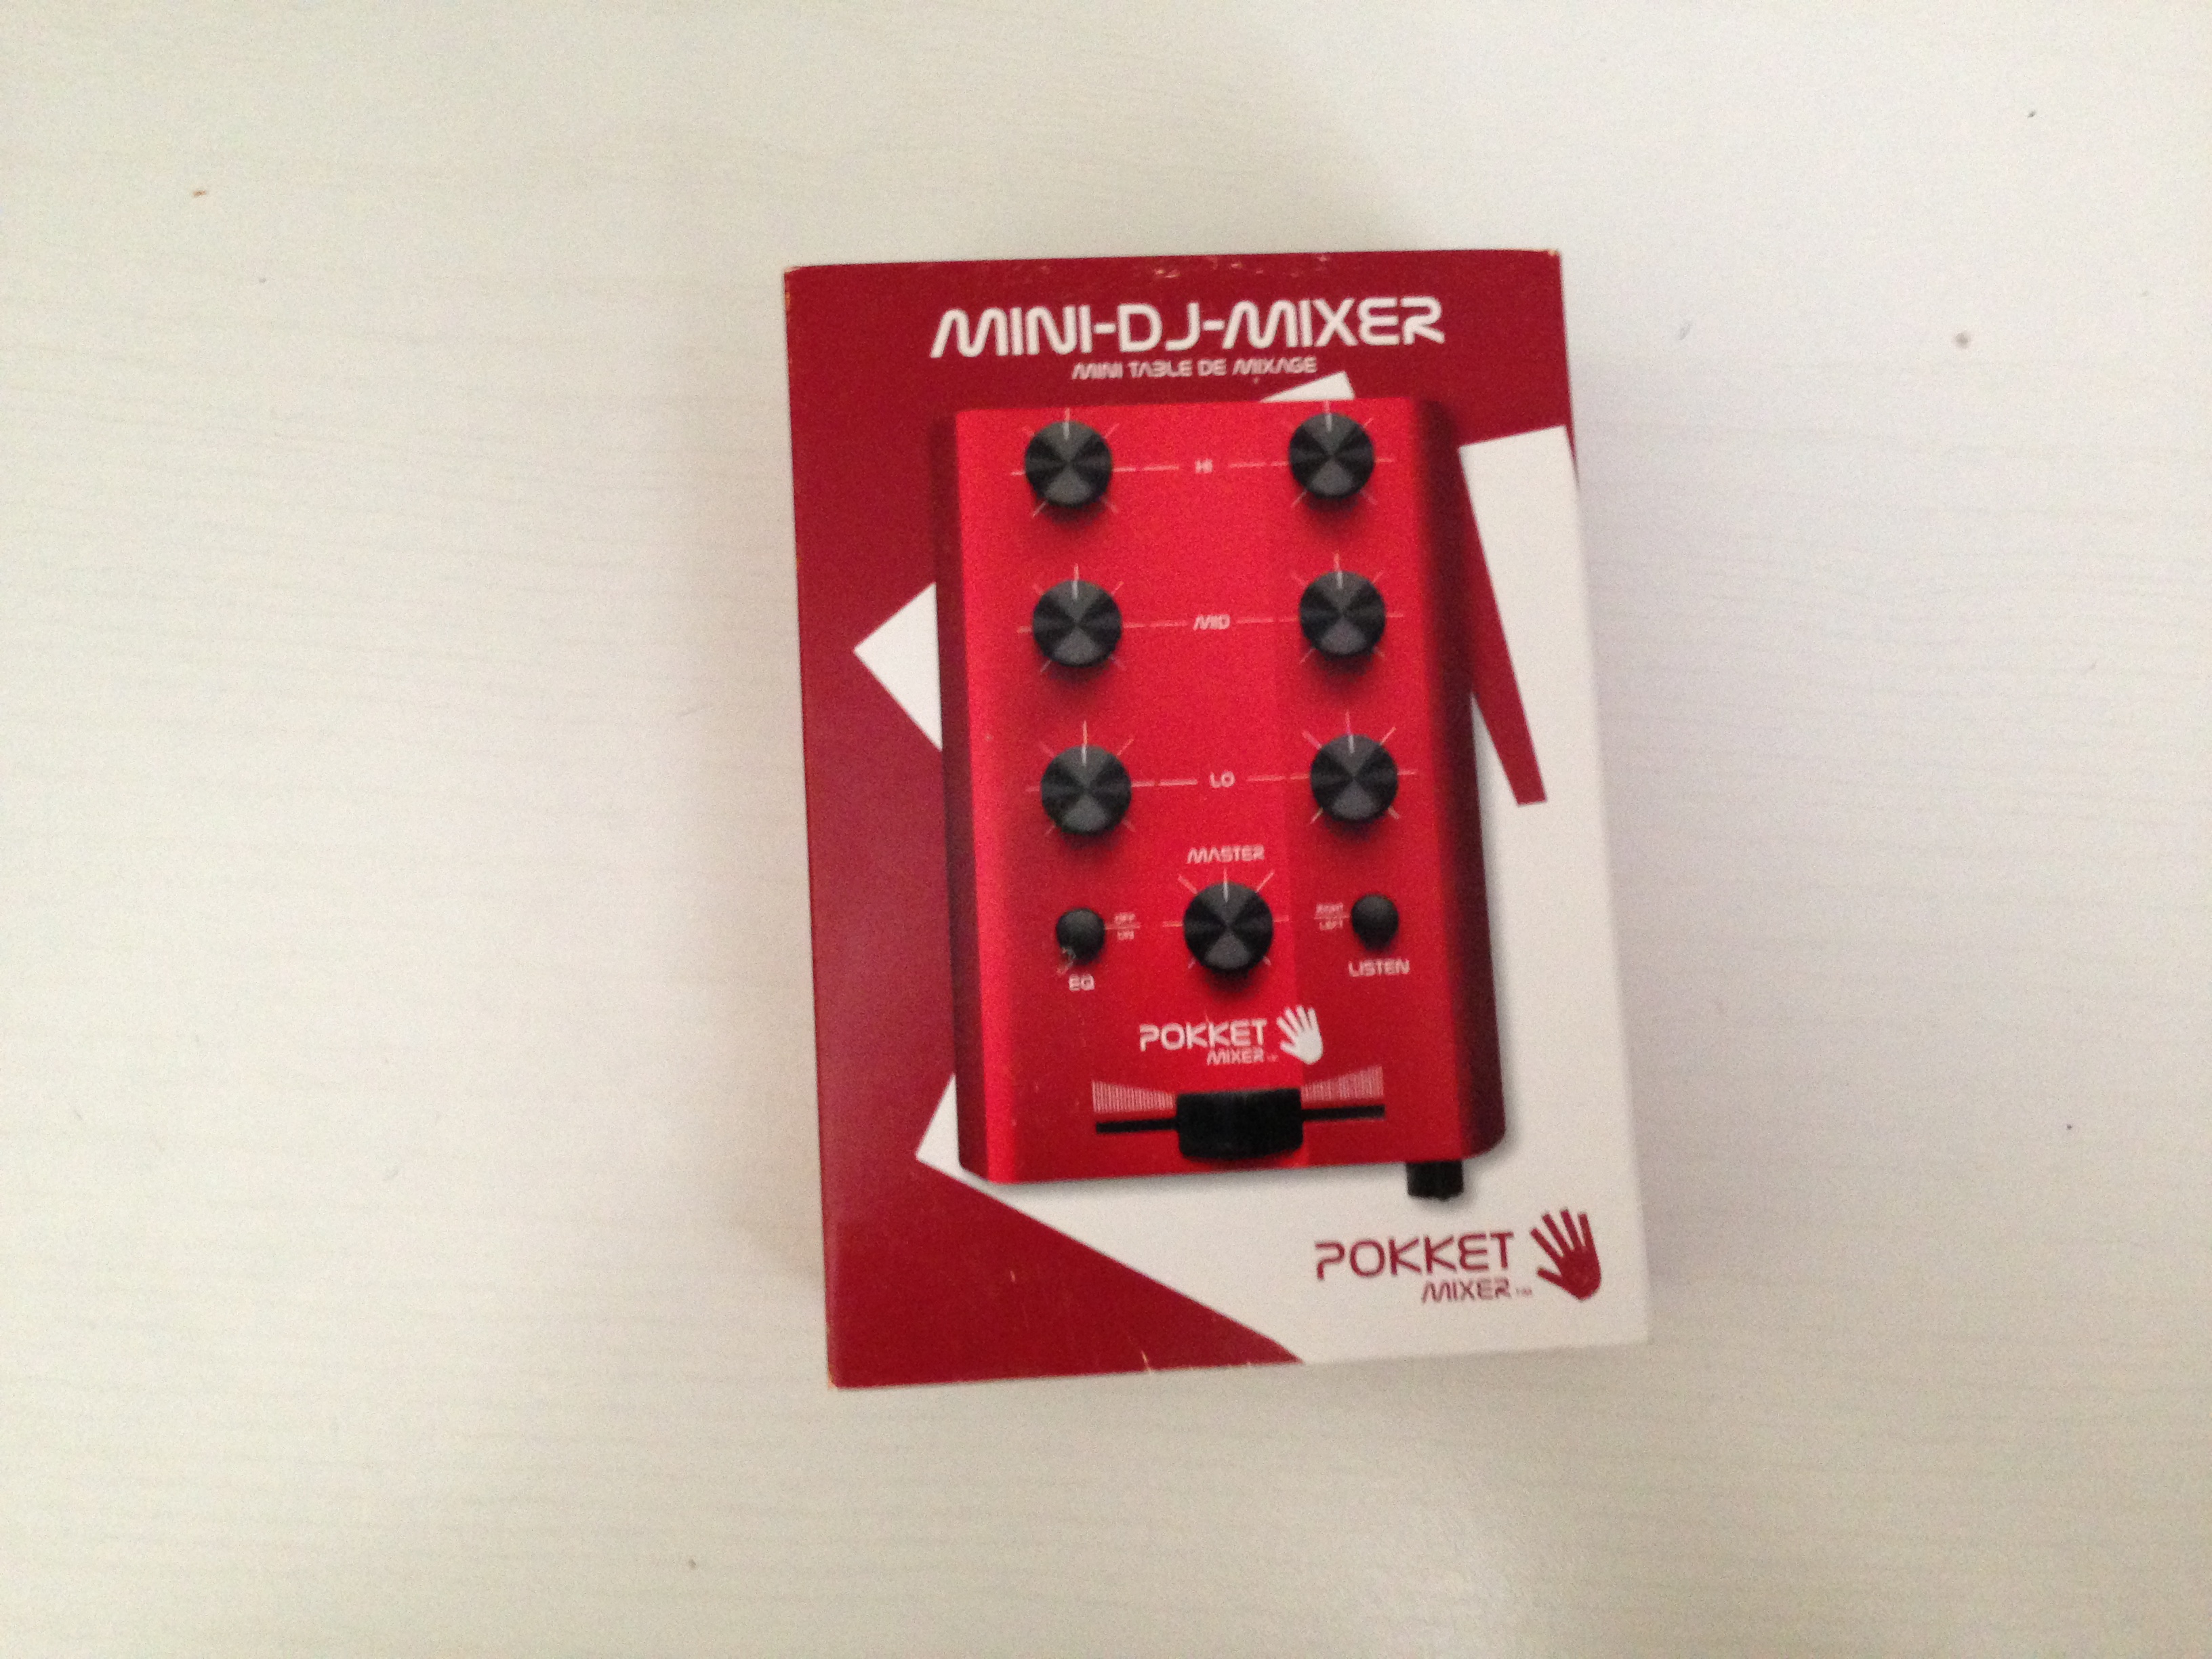 Pokket Mixer: il più piccolo DJ Mixer al mondo? – La recensione di iPhoneItalia